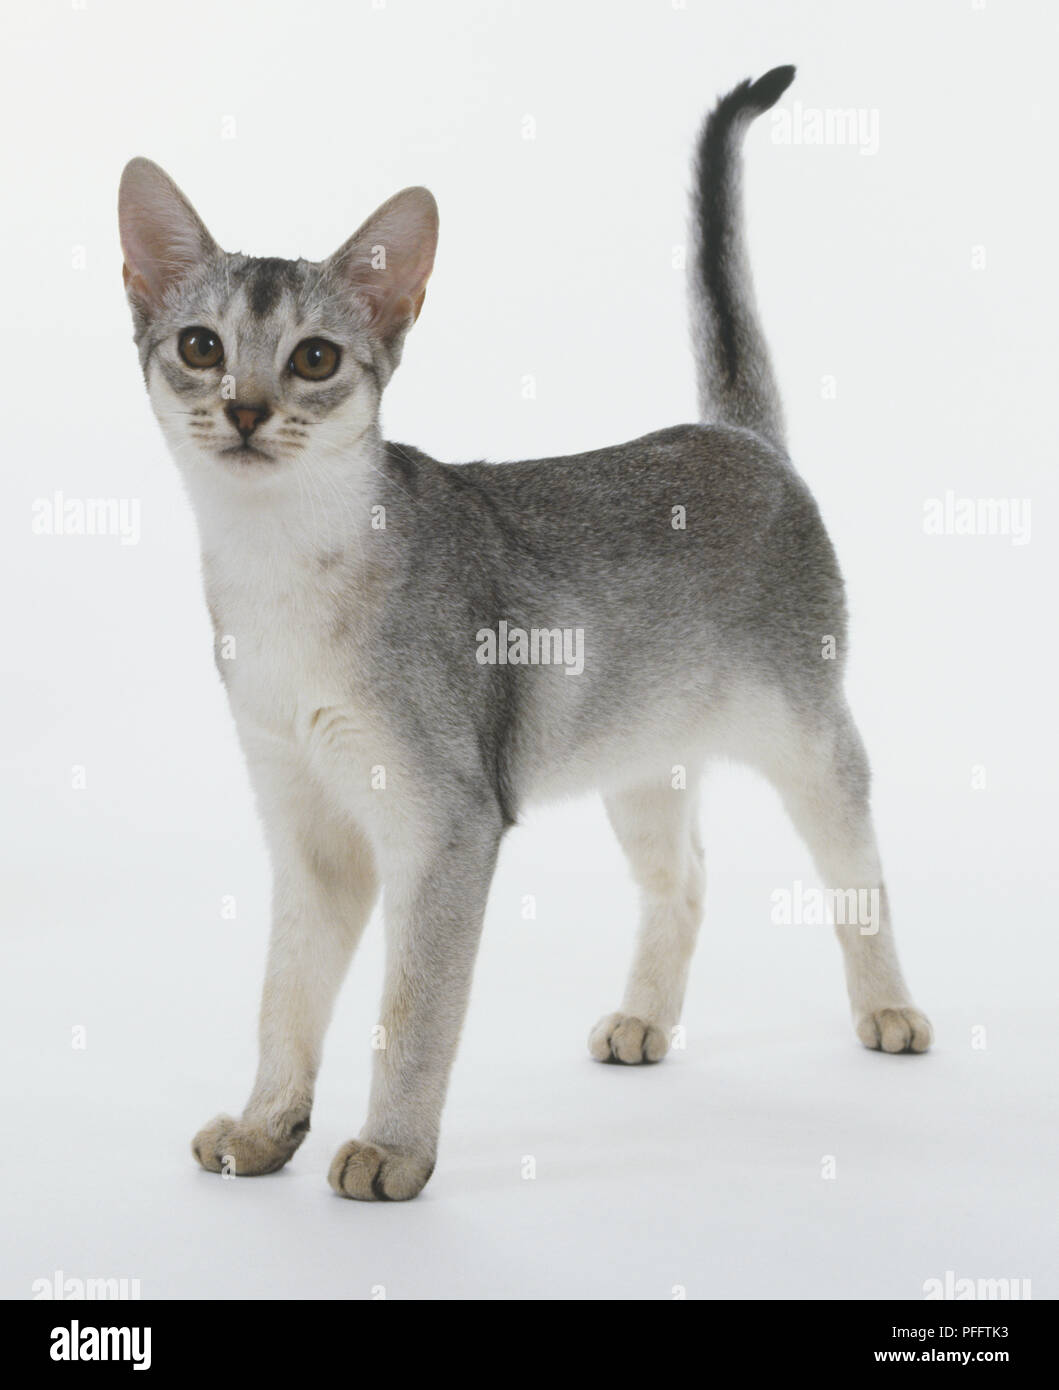 Nero-argento gatto abissino (felis catus) in piedi con il tail rialzato, vista frontale Foto Stock